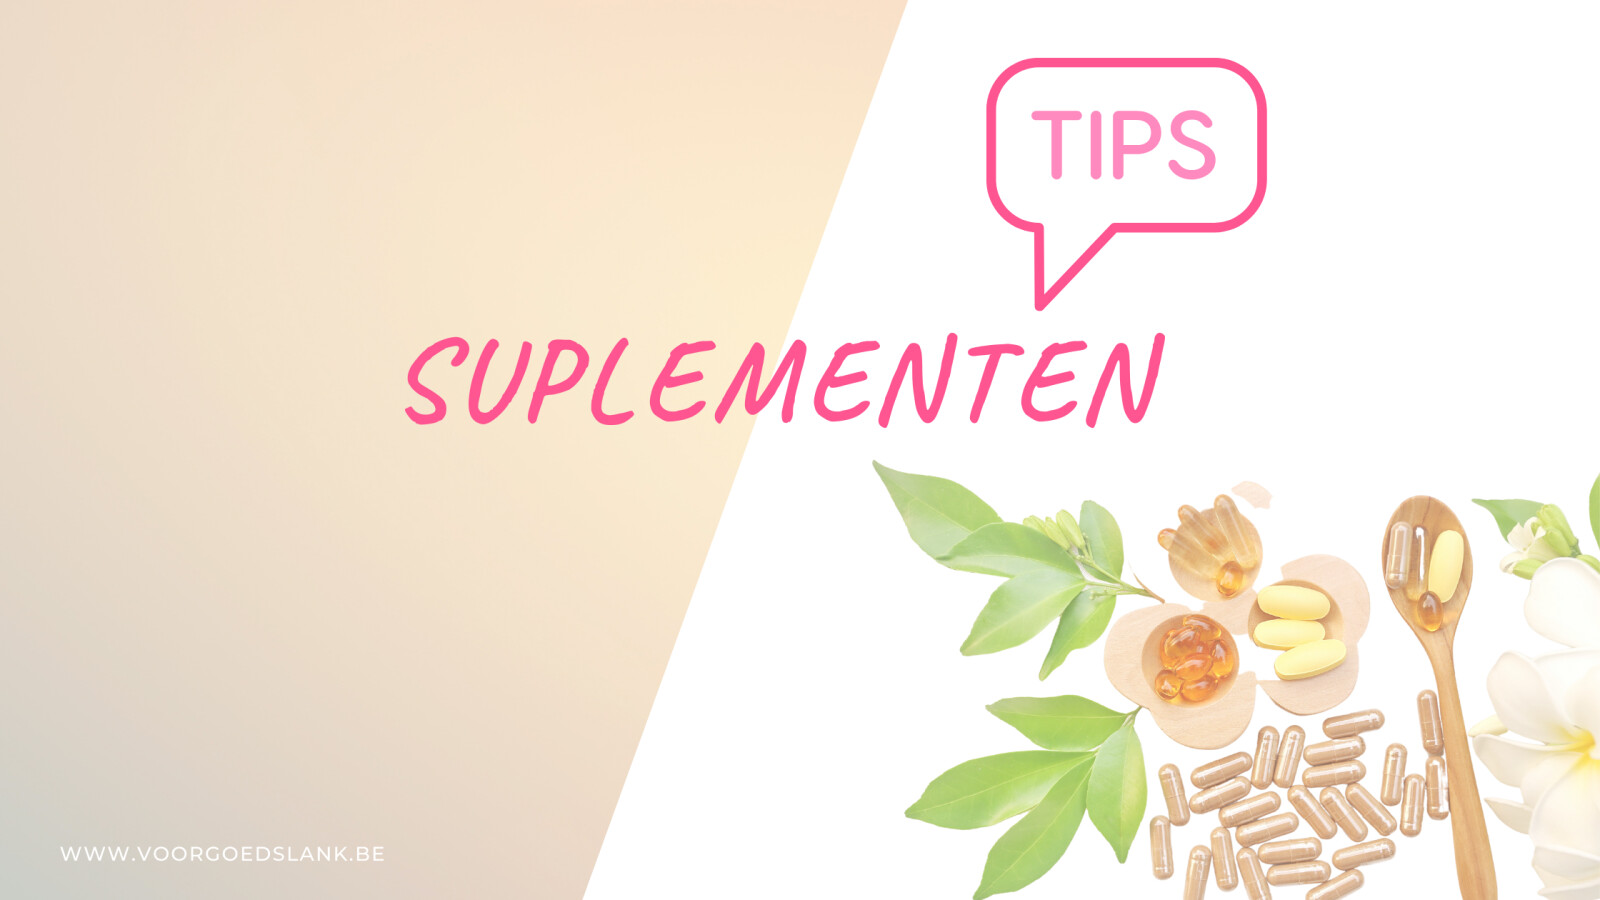 Tips bij supplementen!